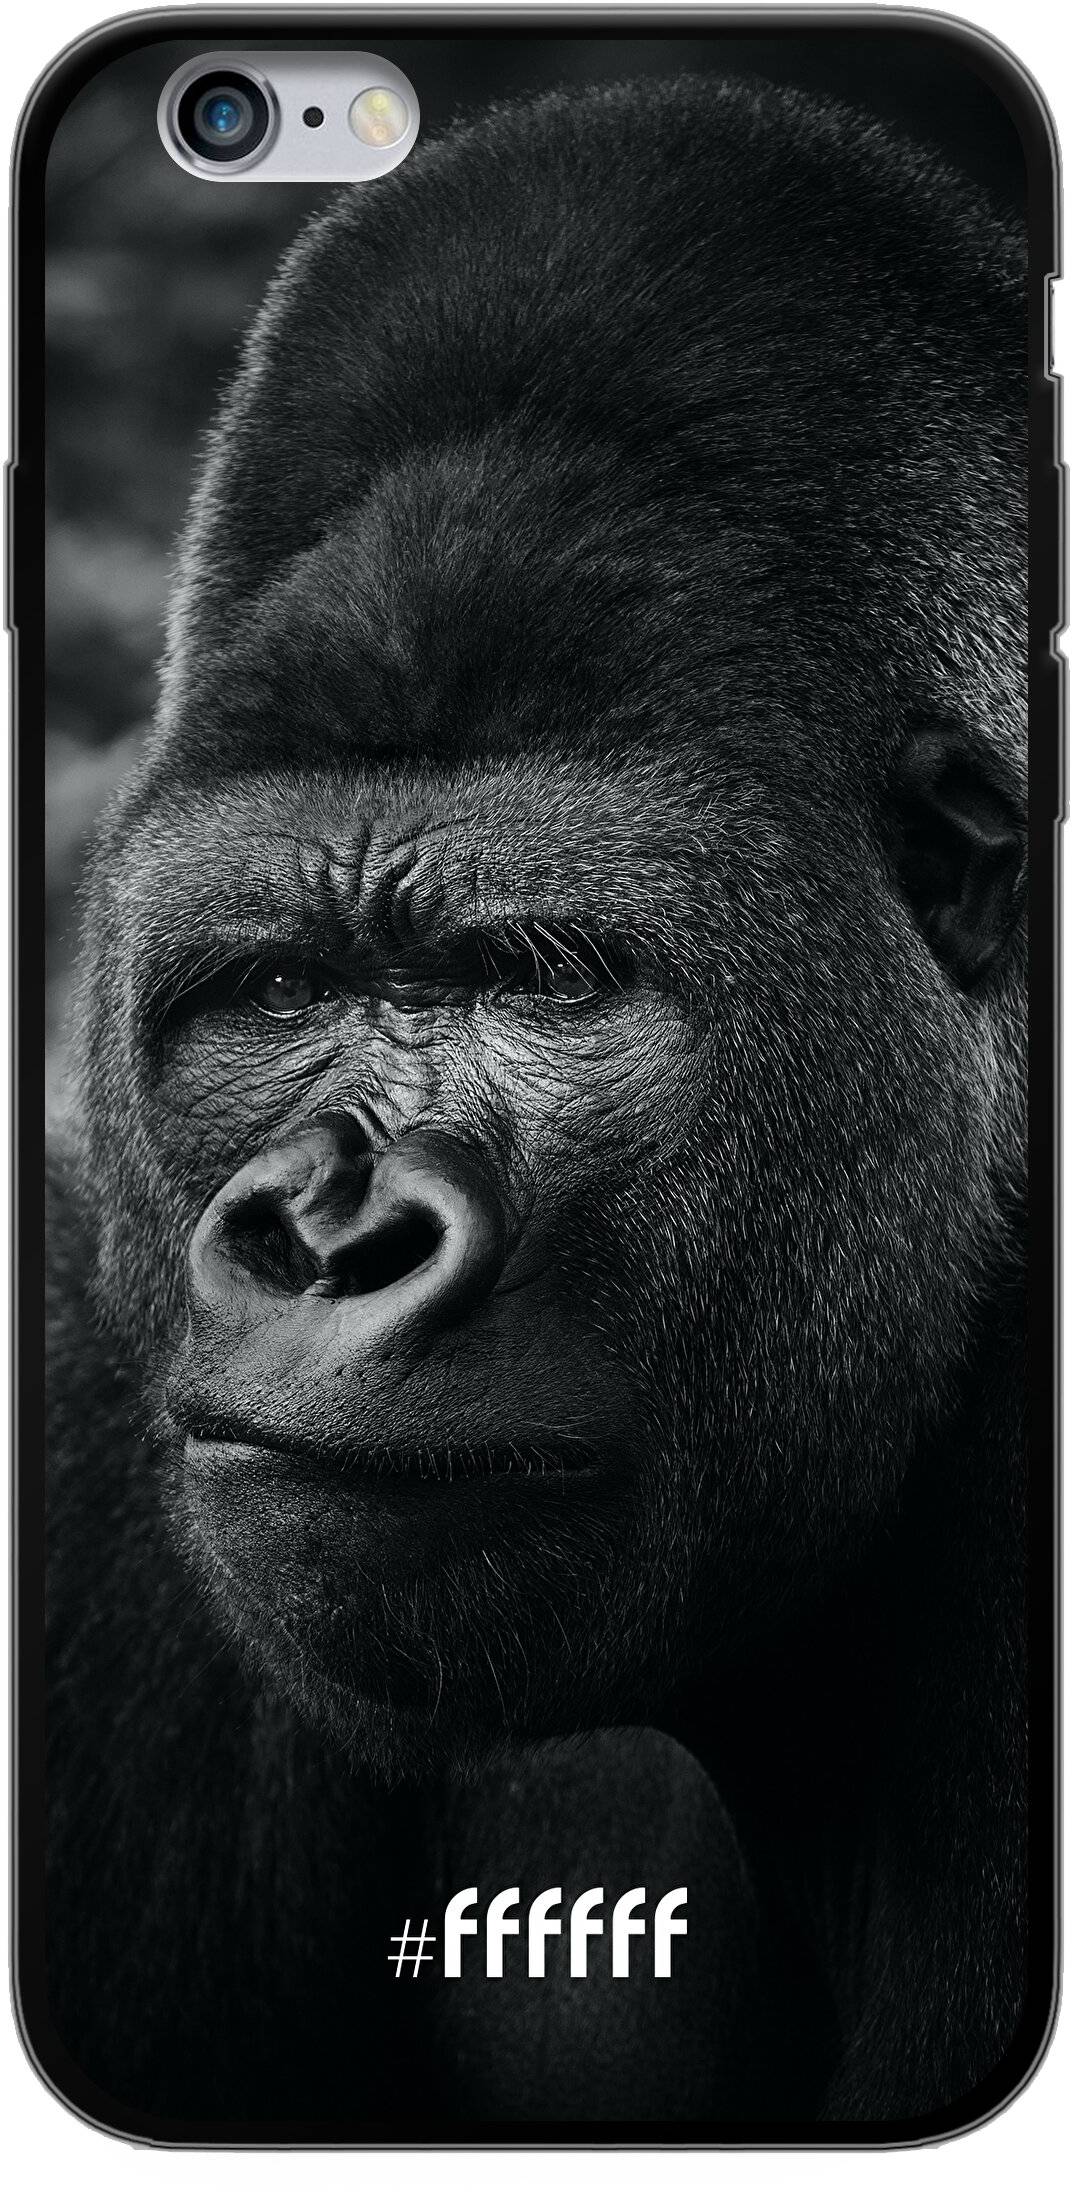 Gorilla iPhone 6